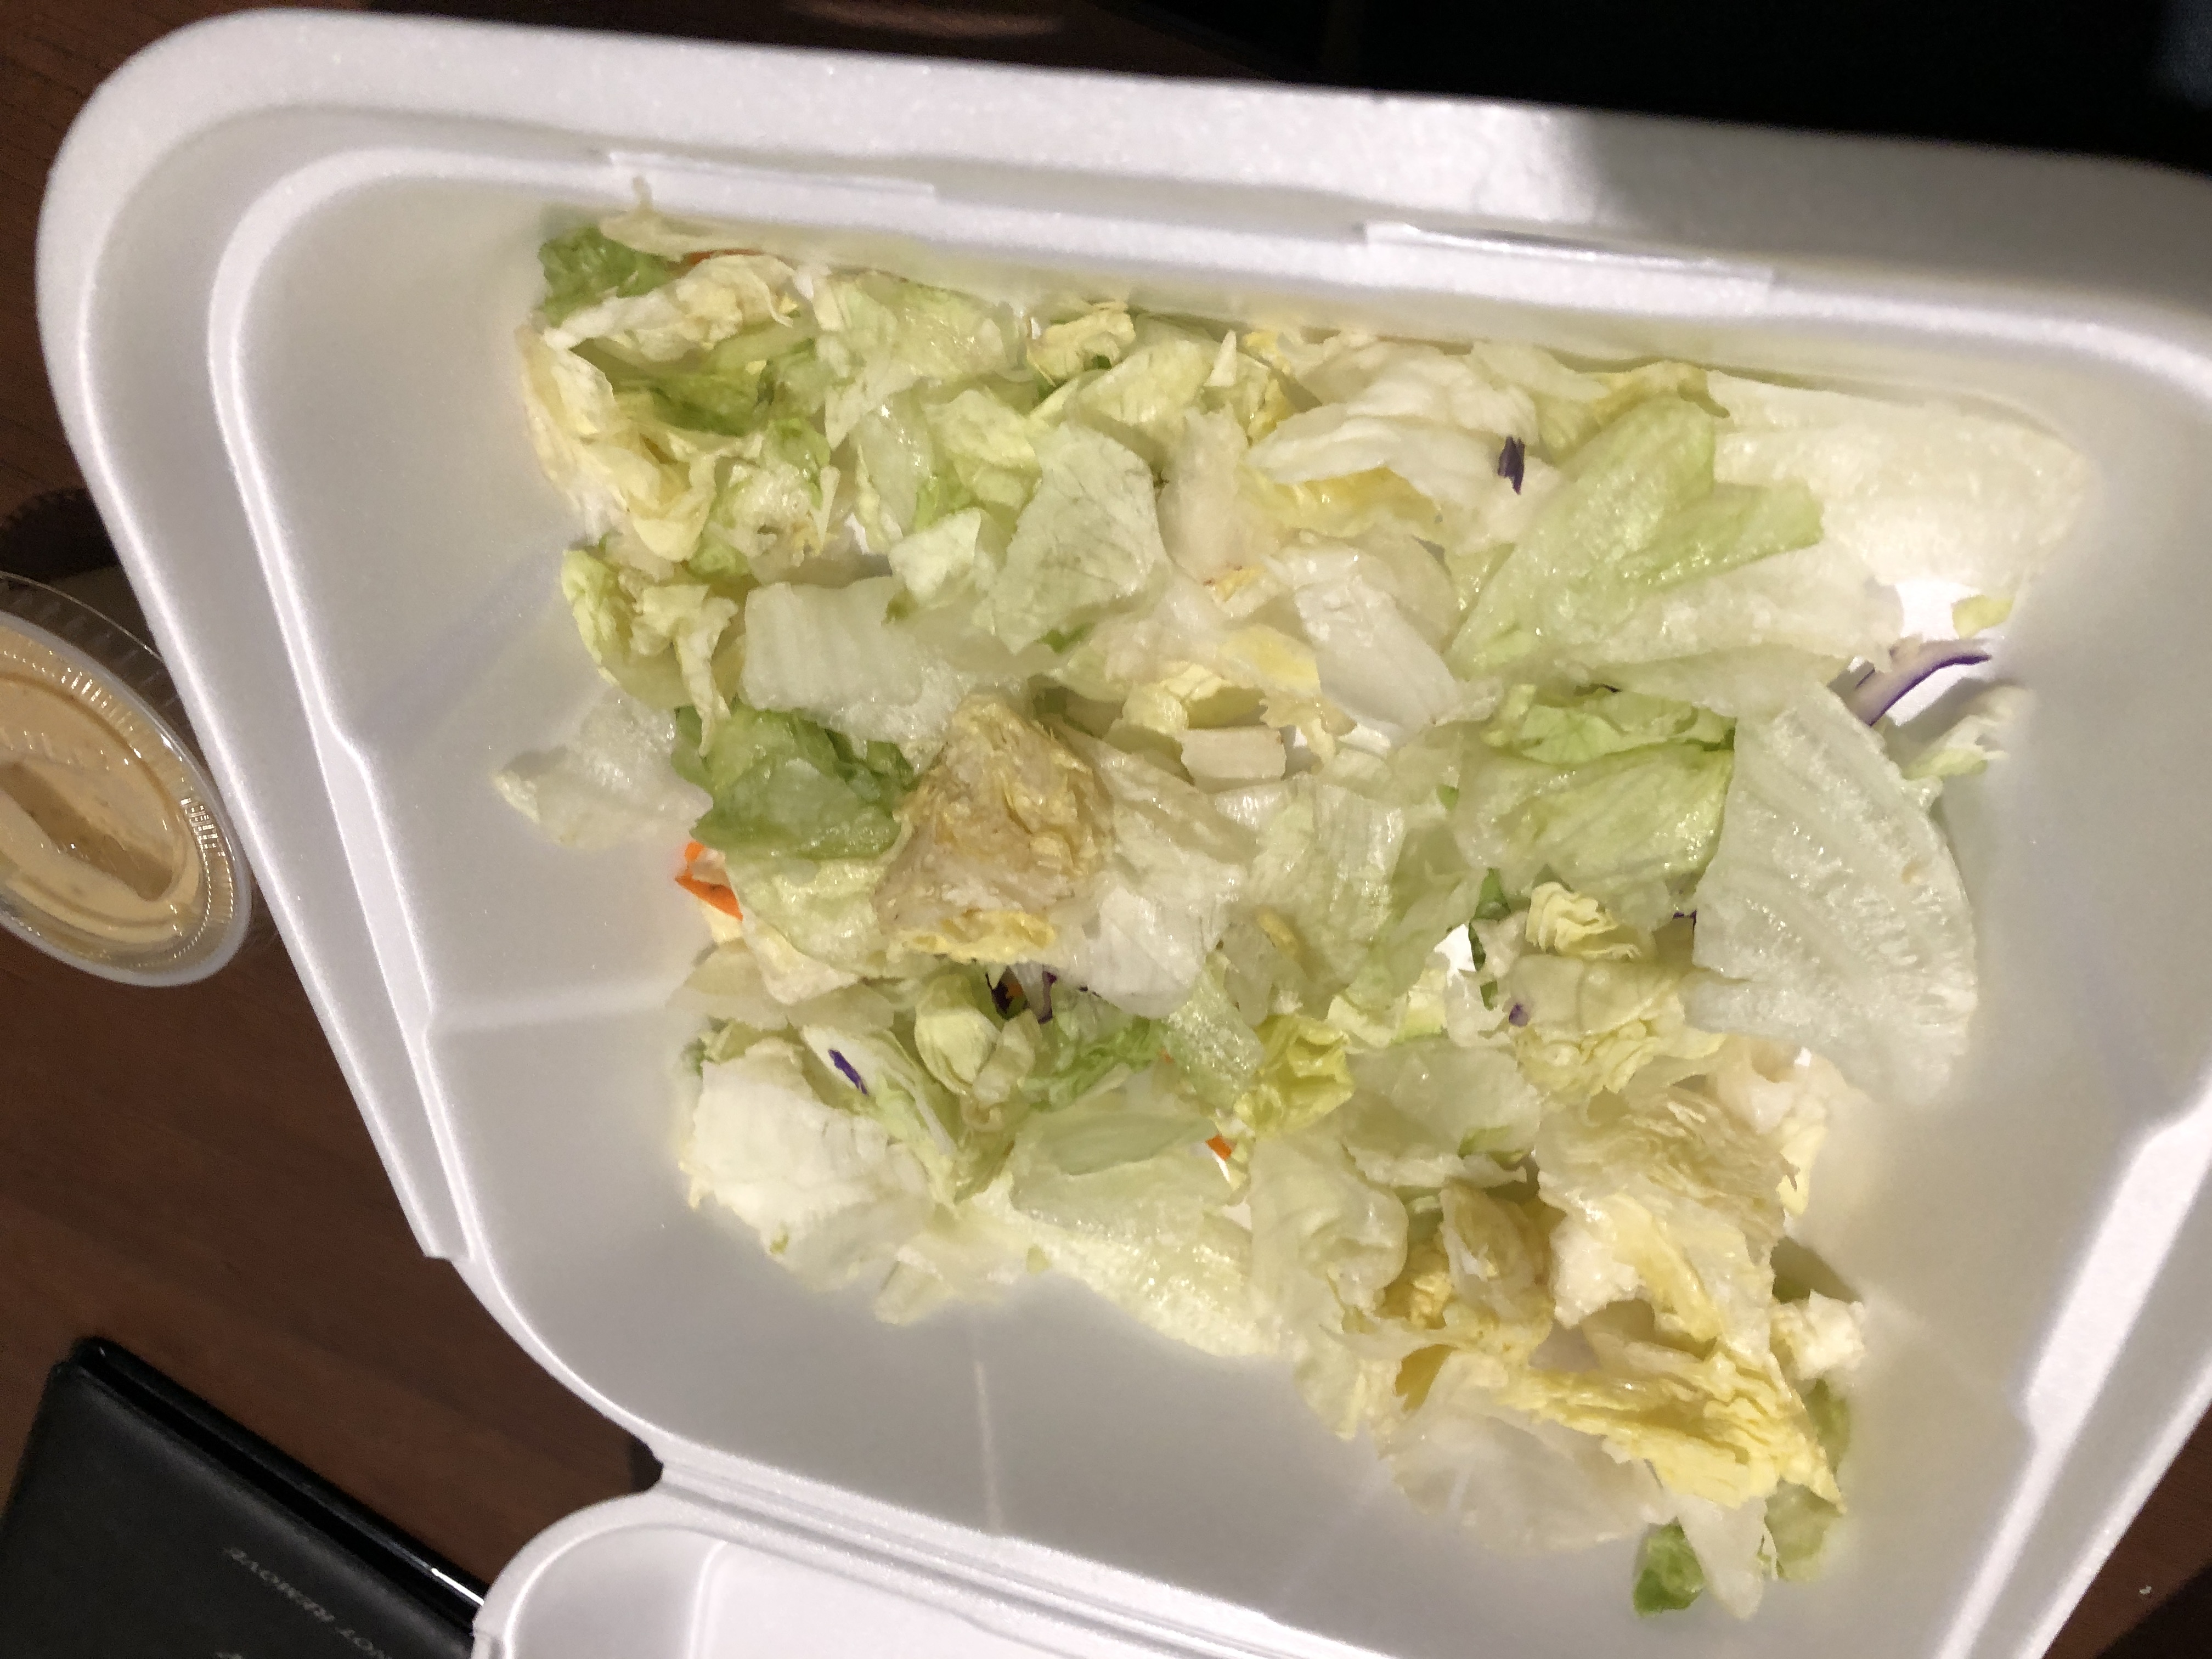 a horrible salad